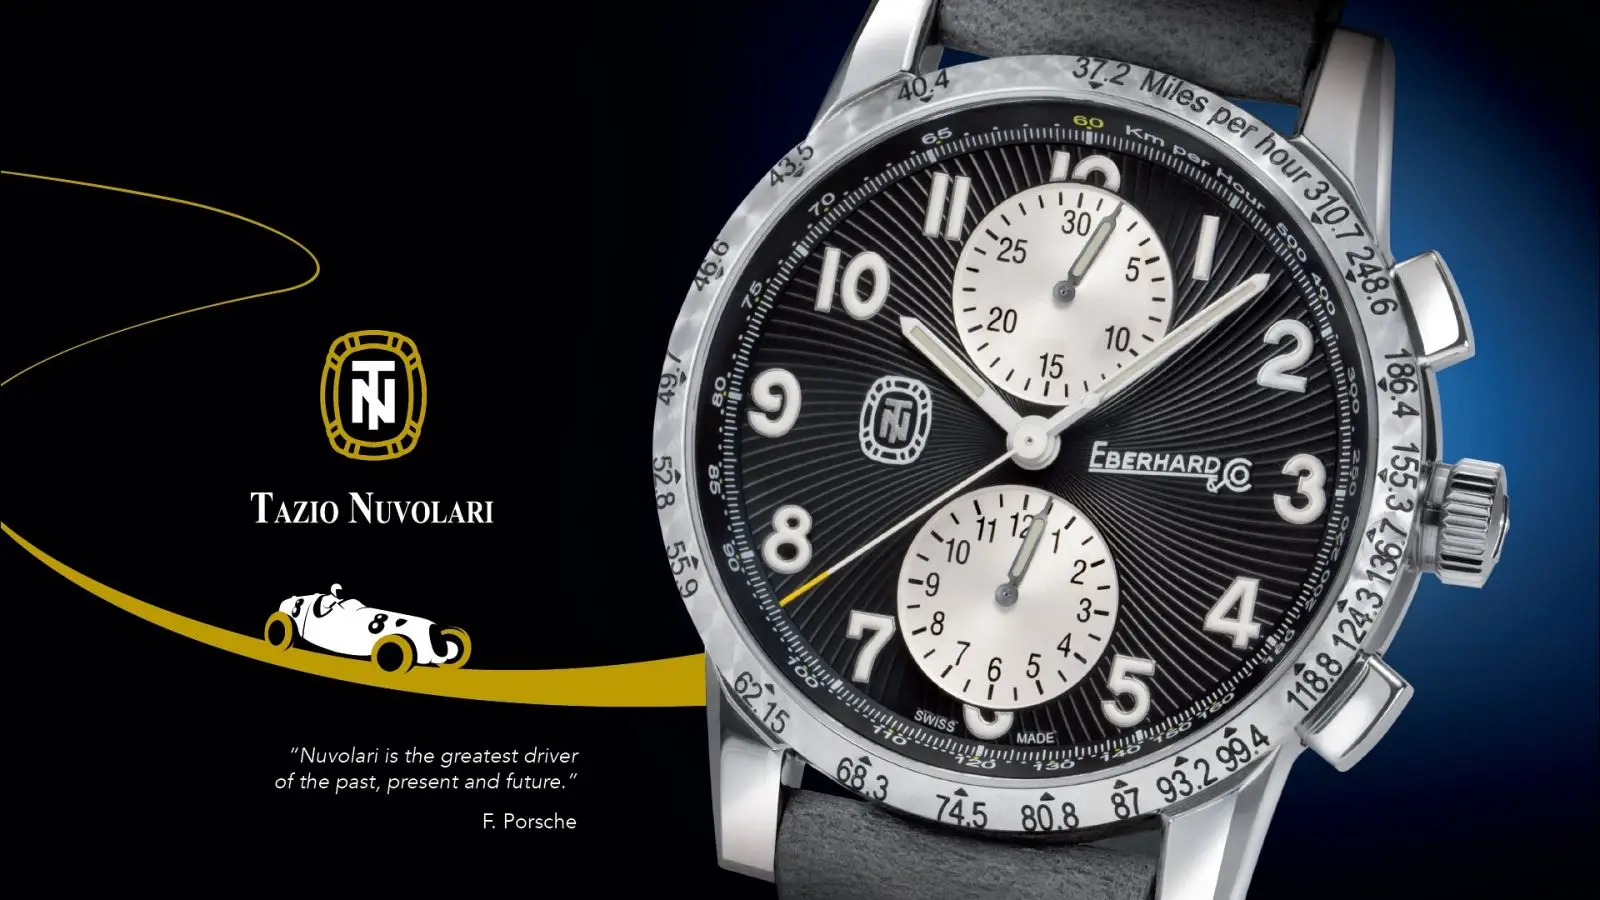 Legendarny kierowca, emblematyczna kolekcja zegarków. Eberhard & Co Tazio Nuvolari